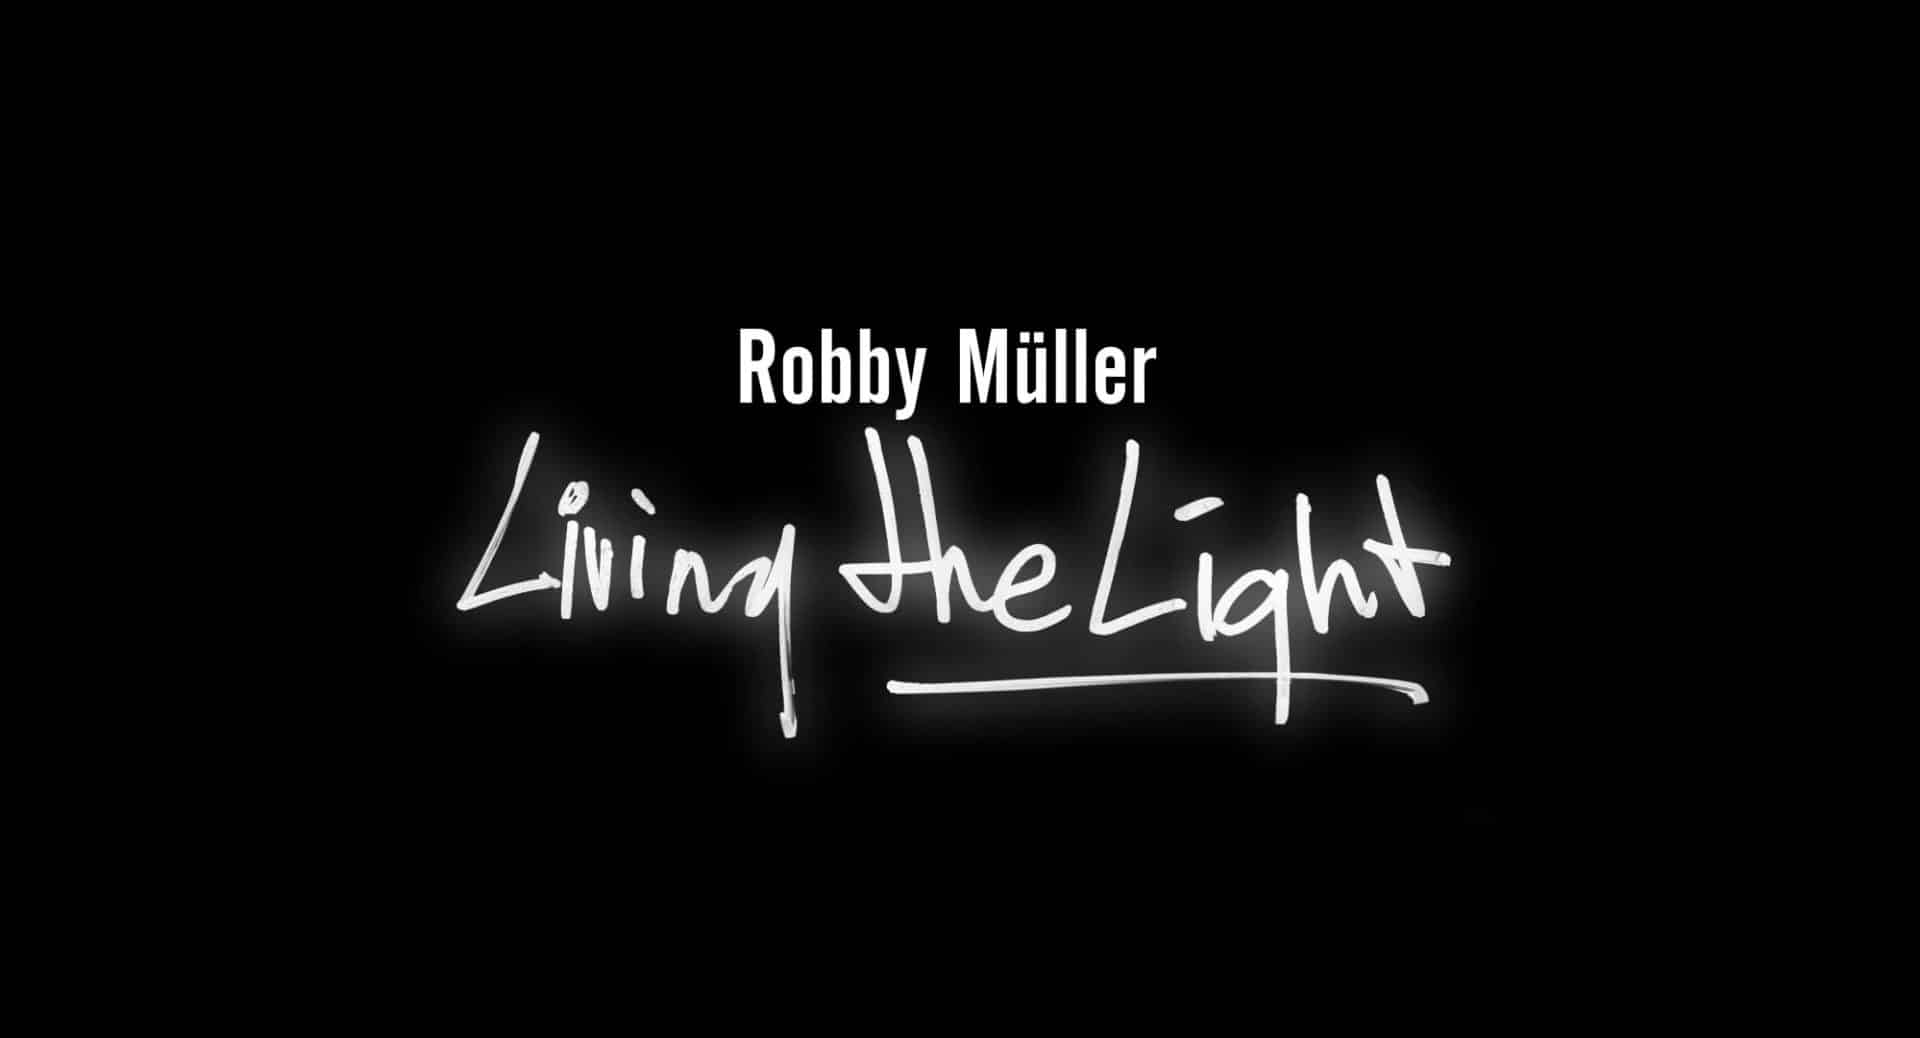 Living the Light – Robby Muller: ecco il trailer del doc di Venezia 2018